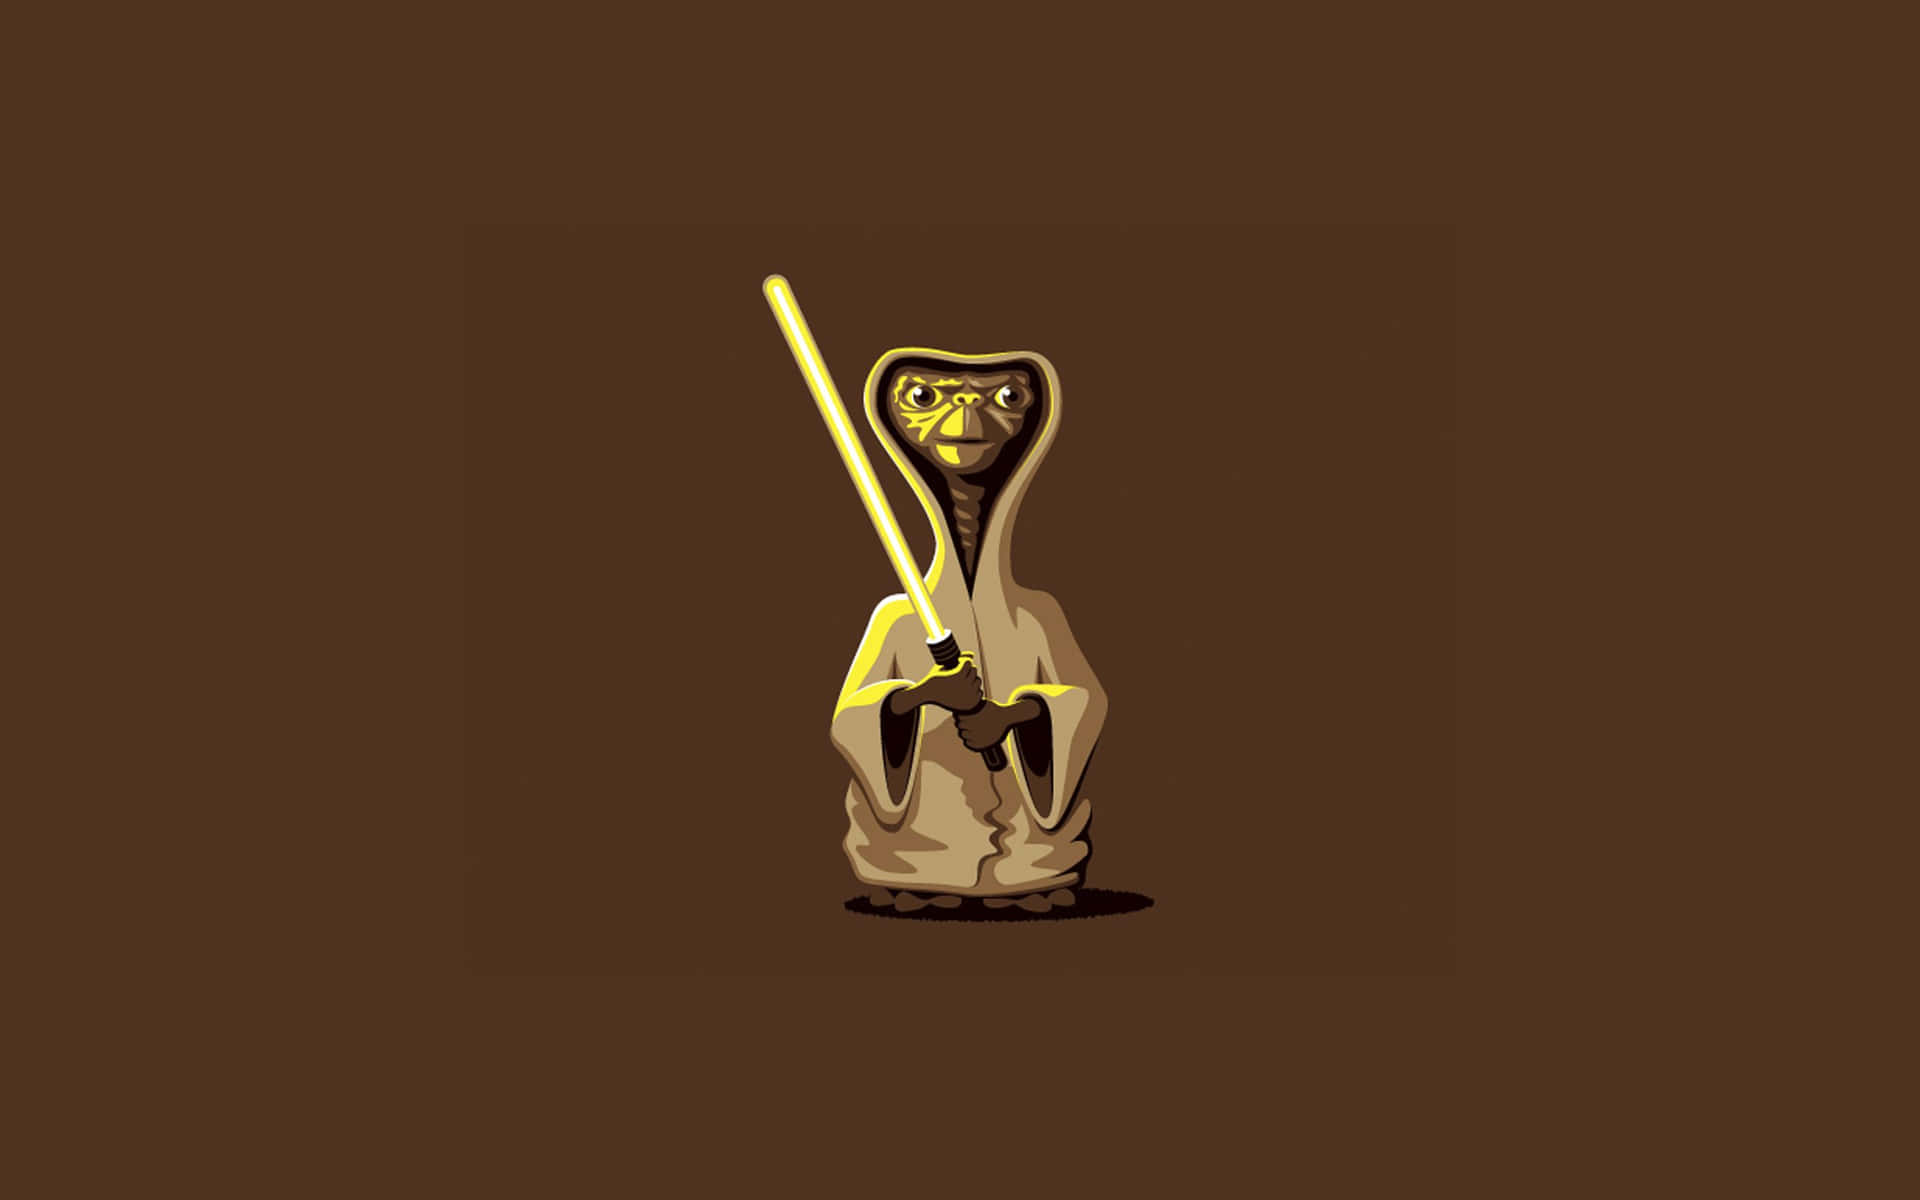 a star wars teddy bear with a golden light saber